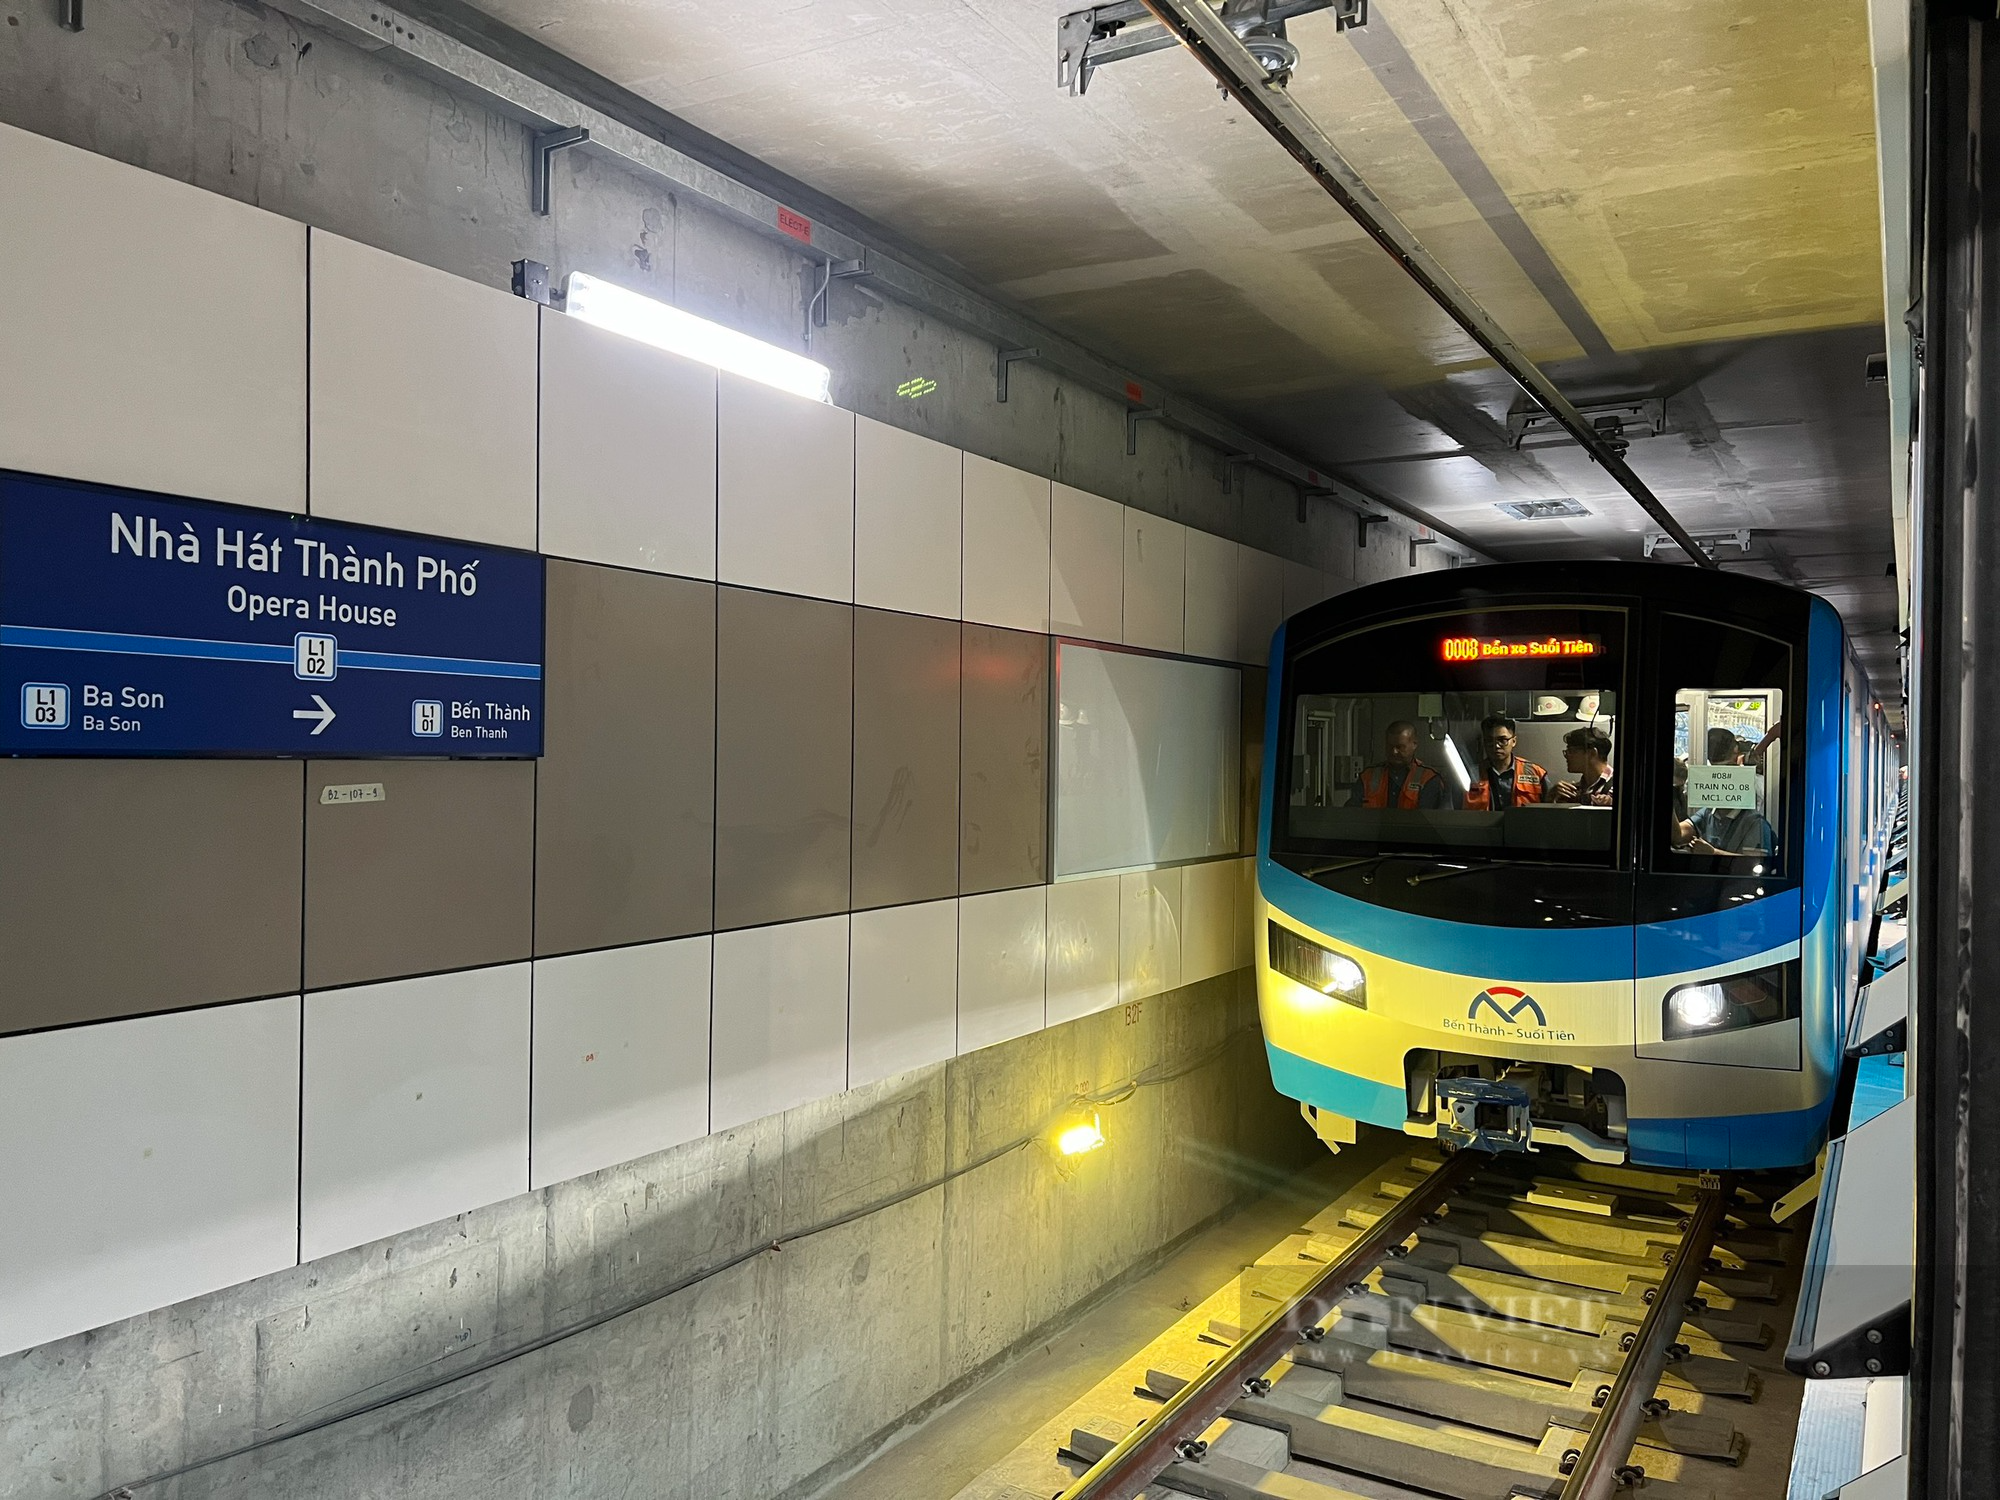 Chiêm ngưỡng đoàn tàu Metro Bến Thành - Suối Tiên chạy thử nghiệm toàn tuyến - Ảnh 4.